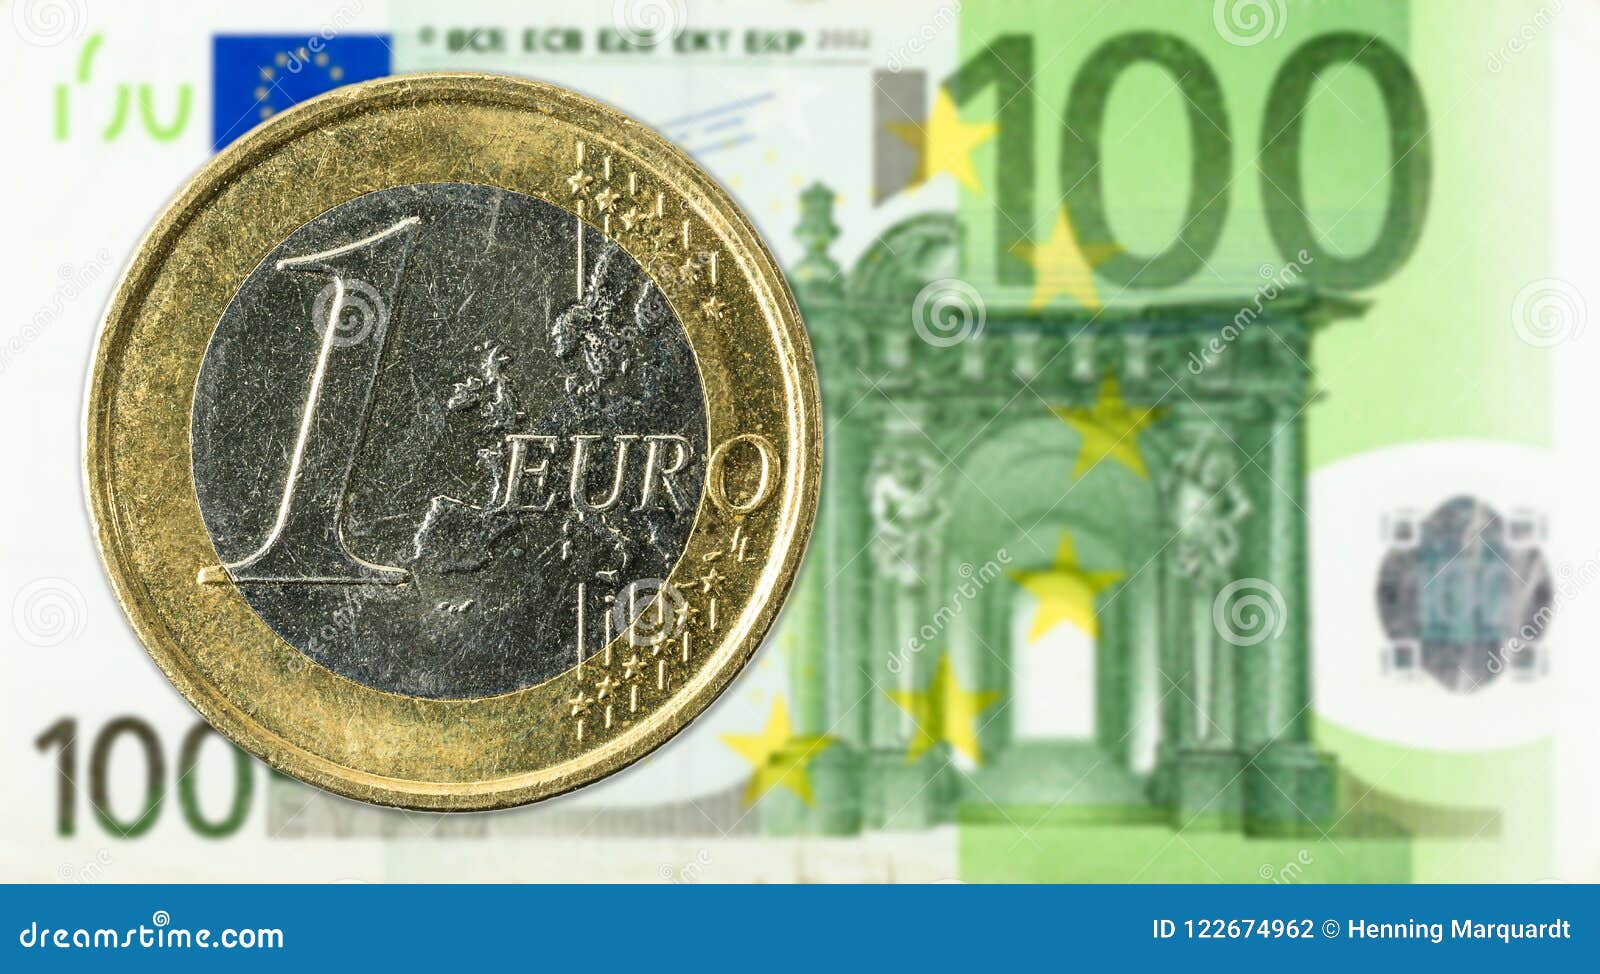 Le Monete Da 1 Euro Contro Il Complemento Della Banconota Dell'euro 100  Fotografia Stock - Immagine di europa, valuta: 122674962